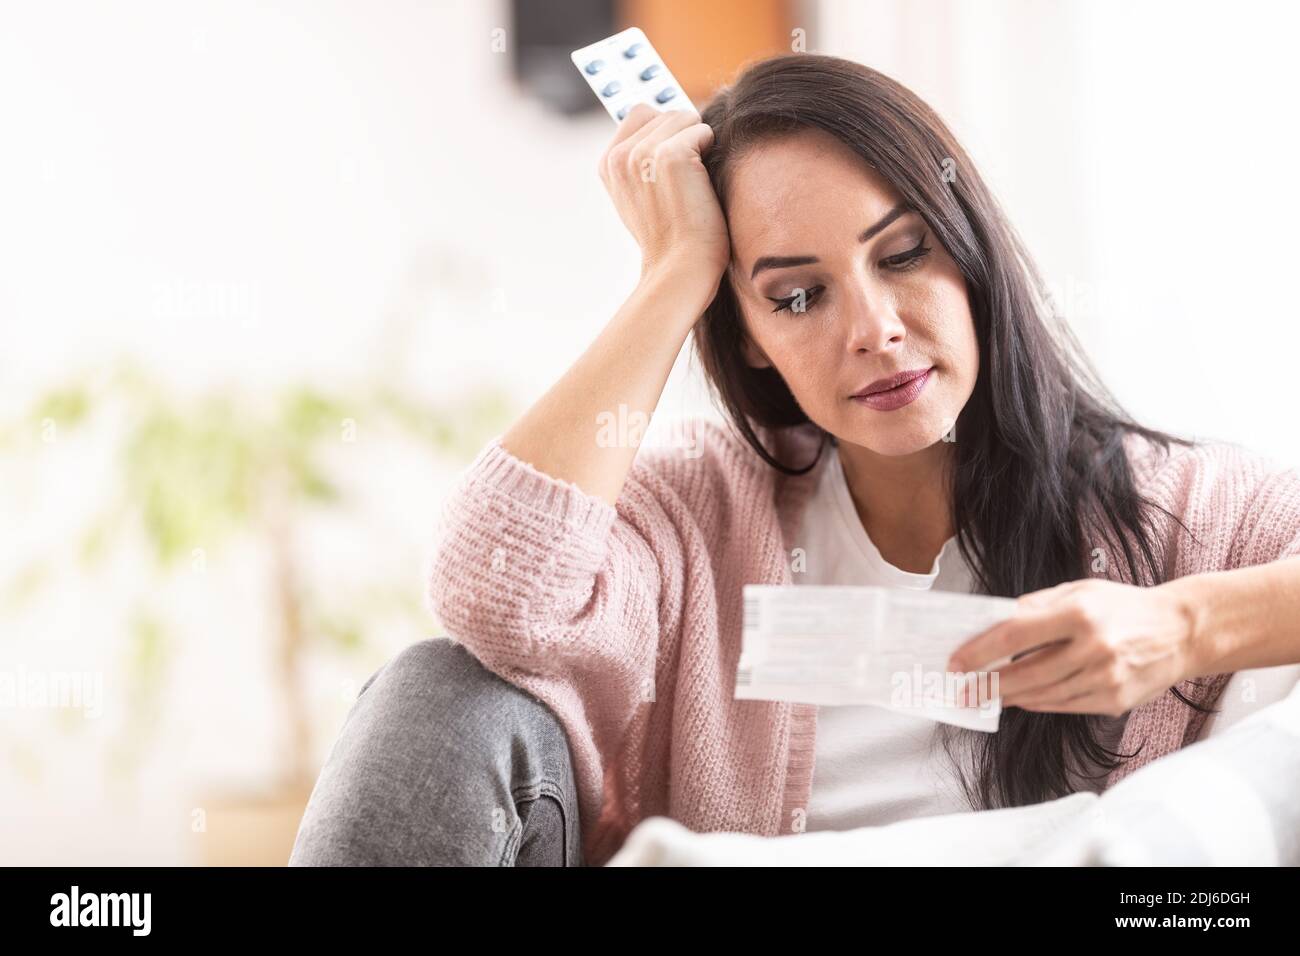 Besorgter Ausdruck auf dem Gesicht einer Frau, die ein Etikett der Medikamentenverpackung liest. Stockfoto